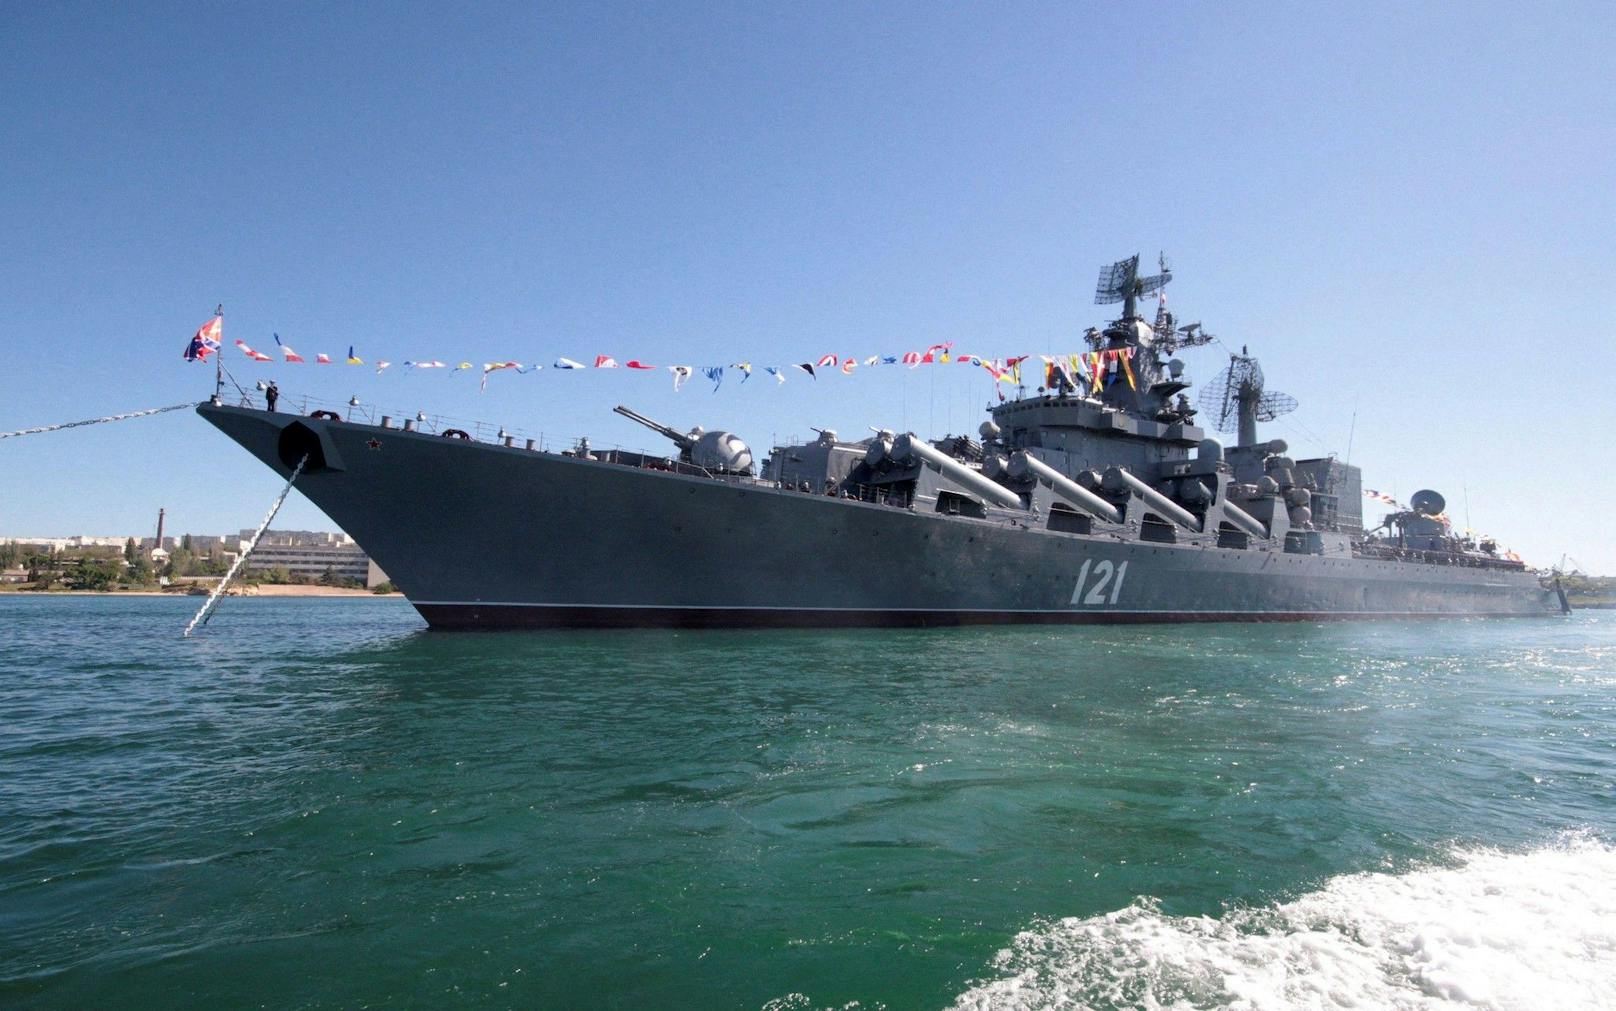 Nach dem erfolgreichen Test wird das U-Boot nun in die russische Pazifikflotte eingegliedert.